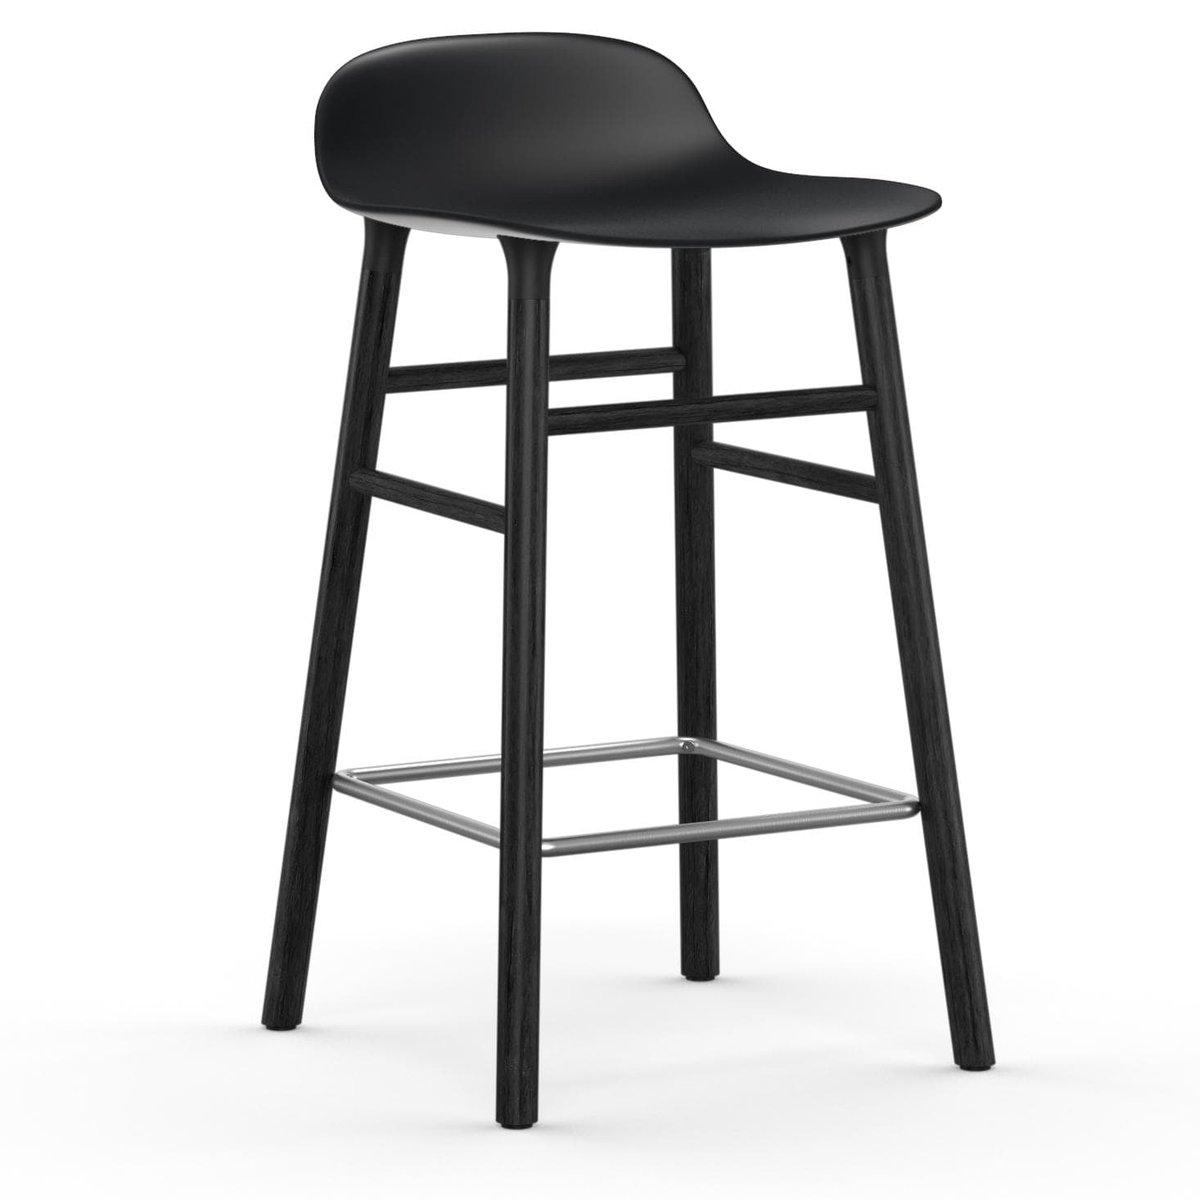 Normann Copenhagen Form Chair barstol lakkerte eikebein 65 cm svart